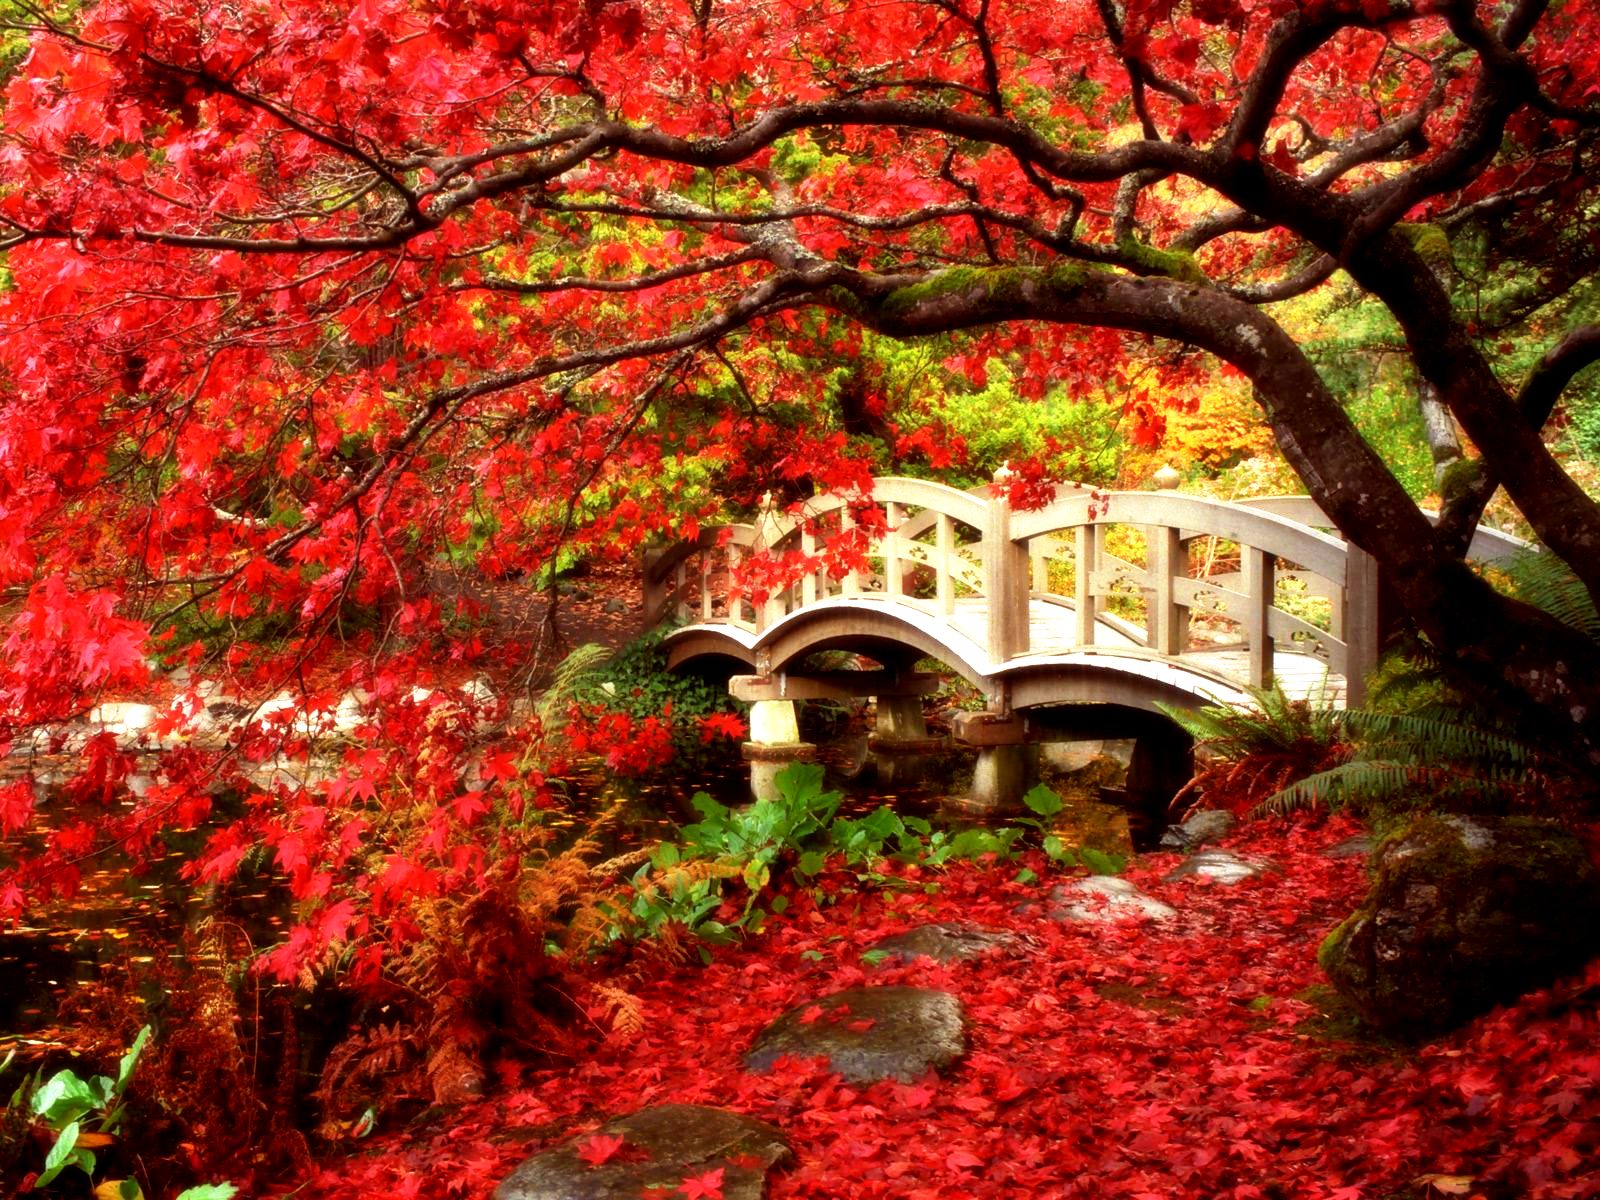 521280 descargar imagen puentes, rojo, puente, hecho por el hombre, columbia británica, canadá, otoño, jardín, jardín japonés, hoja, árbol de arce, árbol: fondos de pantalla y protectores de pantalla gratis